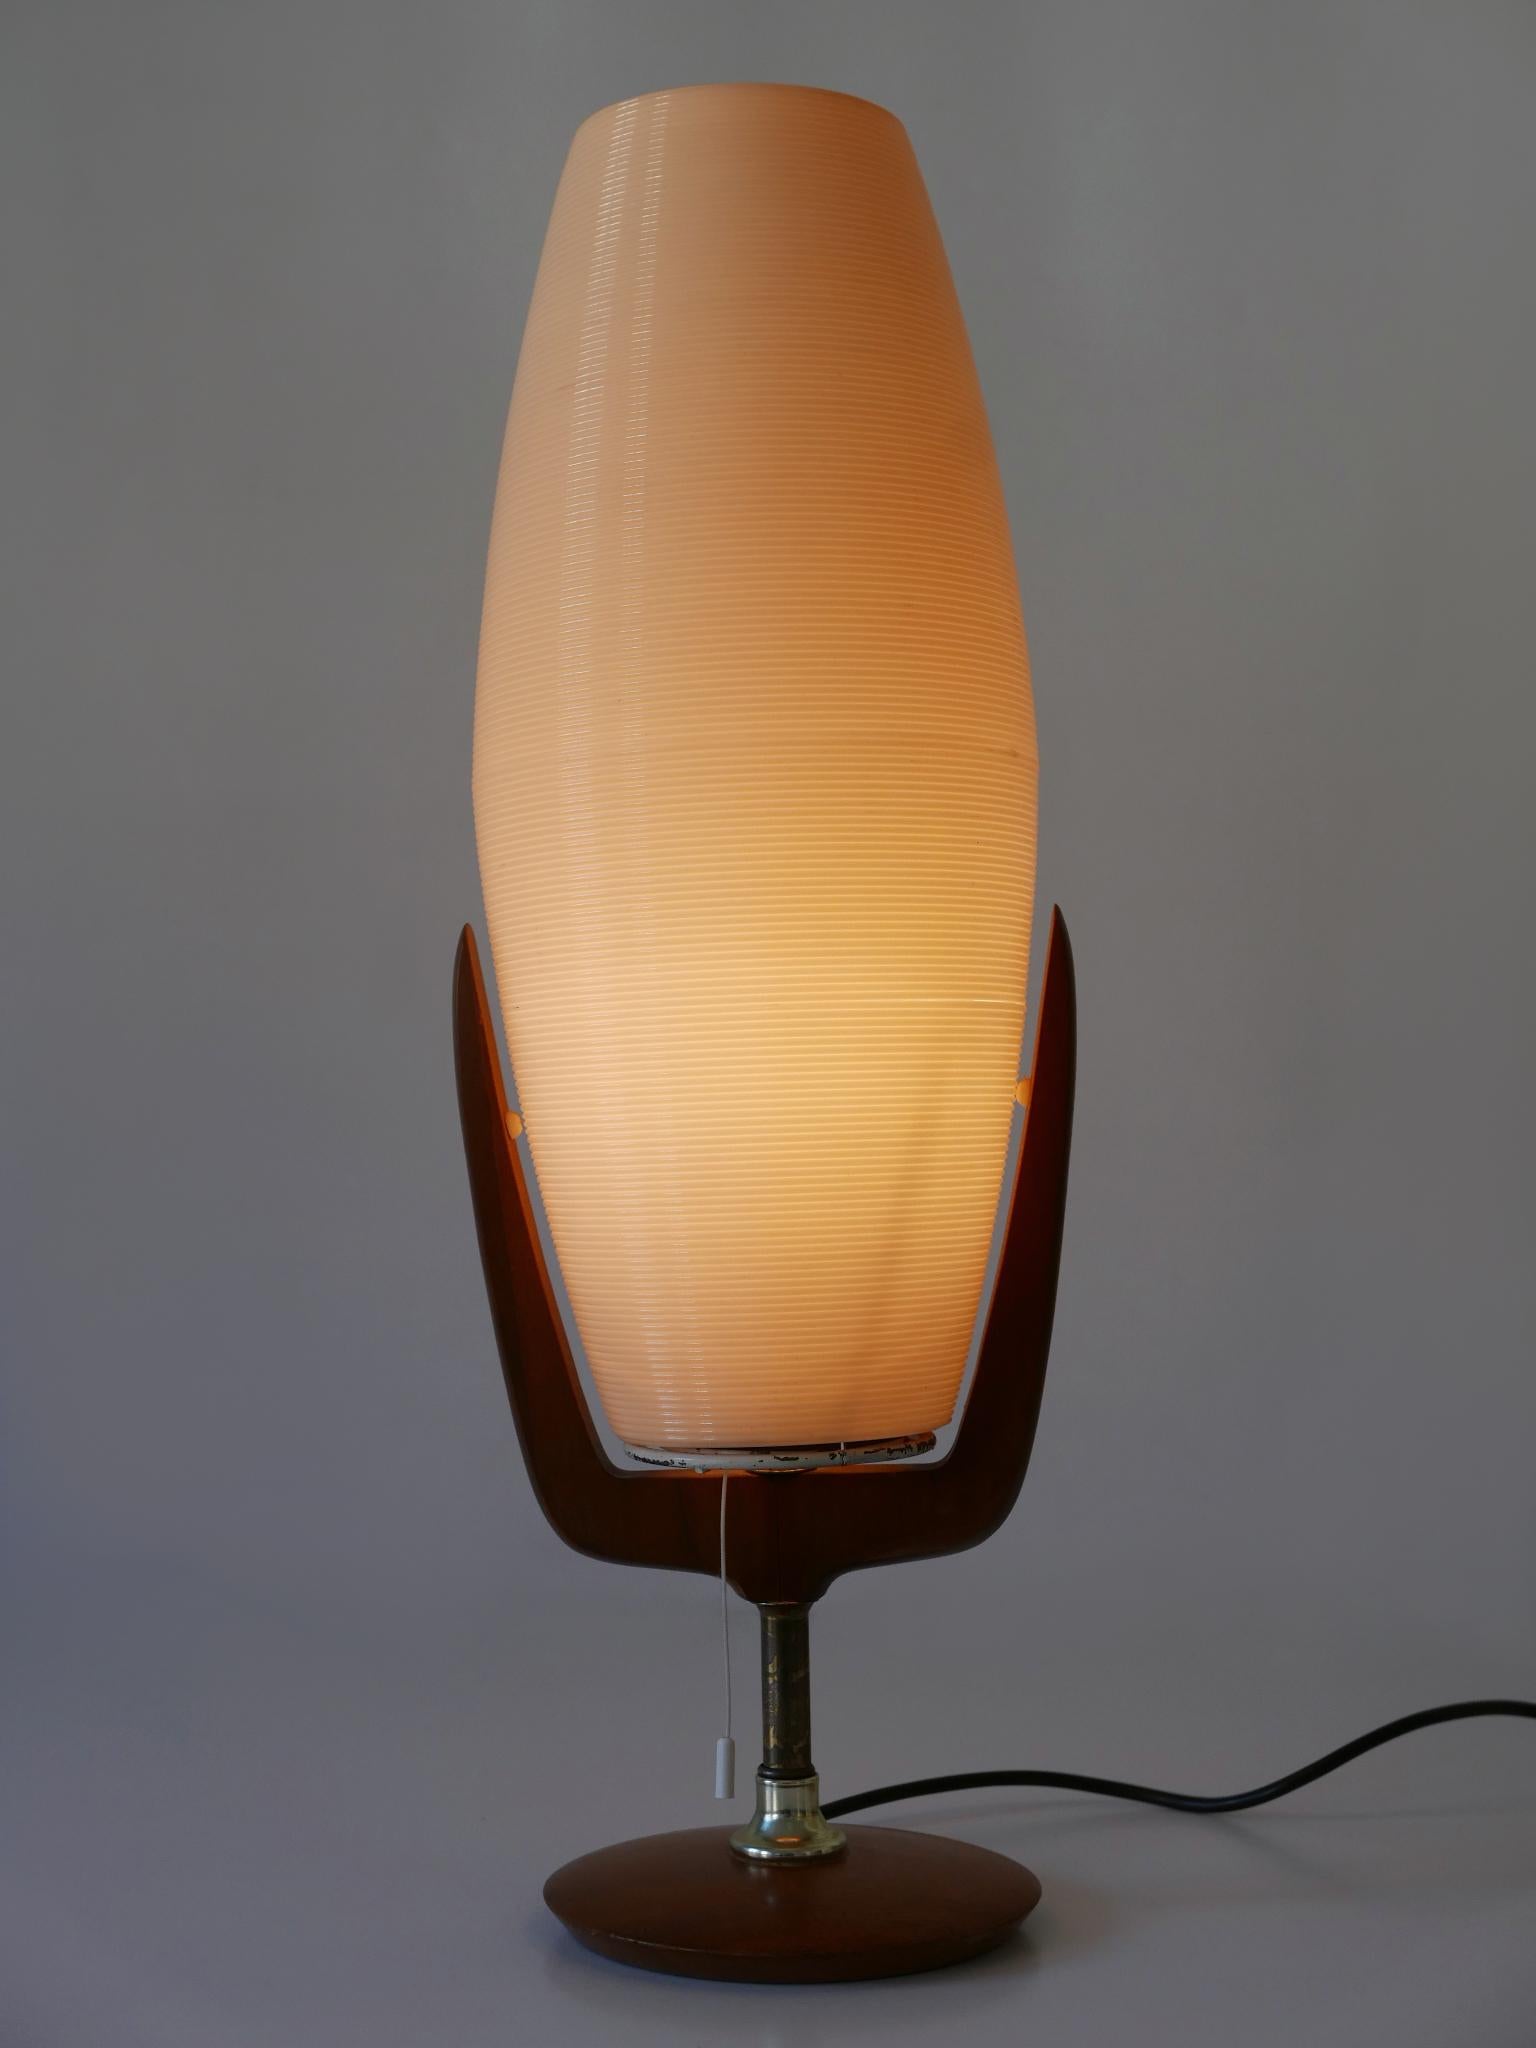 Große, seltene und sehr dekorative Tischlampe aus der Mitte des Jahrhunderts. Entworfen und hergestellt von Yasha Heifetz für Heifetz Manufacturing, USA, 1950er Jahre.

Die aus Kunststoff, Messing und Walnussholz gefertigte Leuchte wird mit 1 x E27